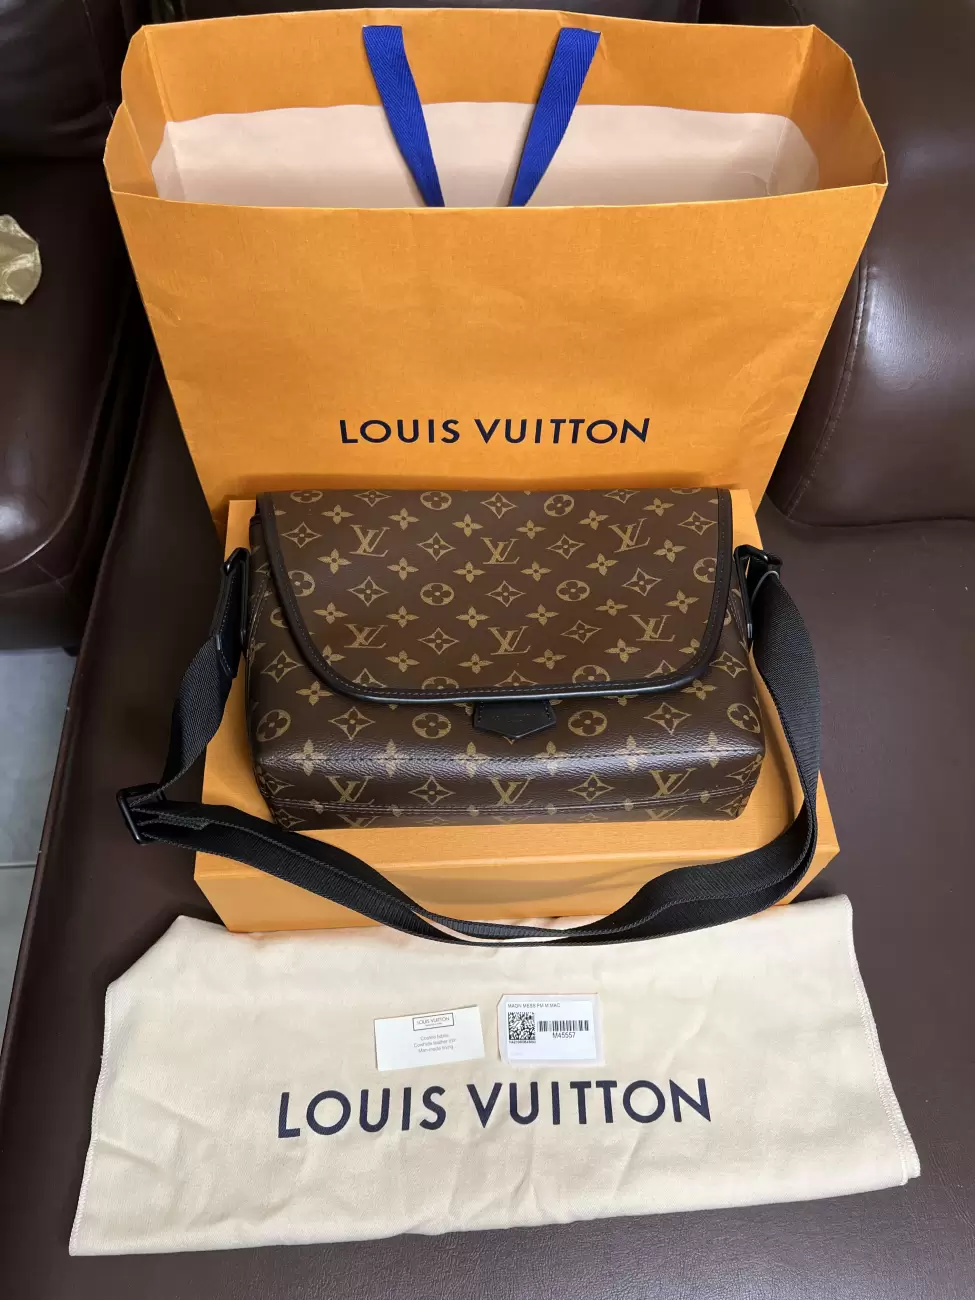 Shop Louis Vuitton Magnetic messenger (M45557) by design◇base